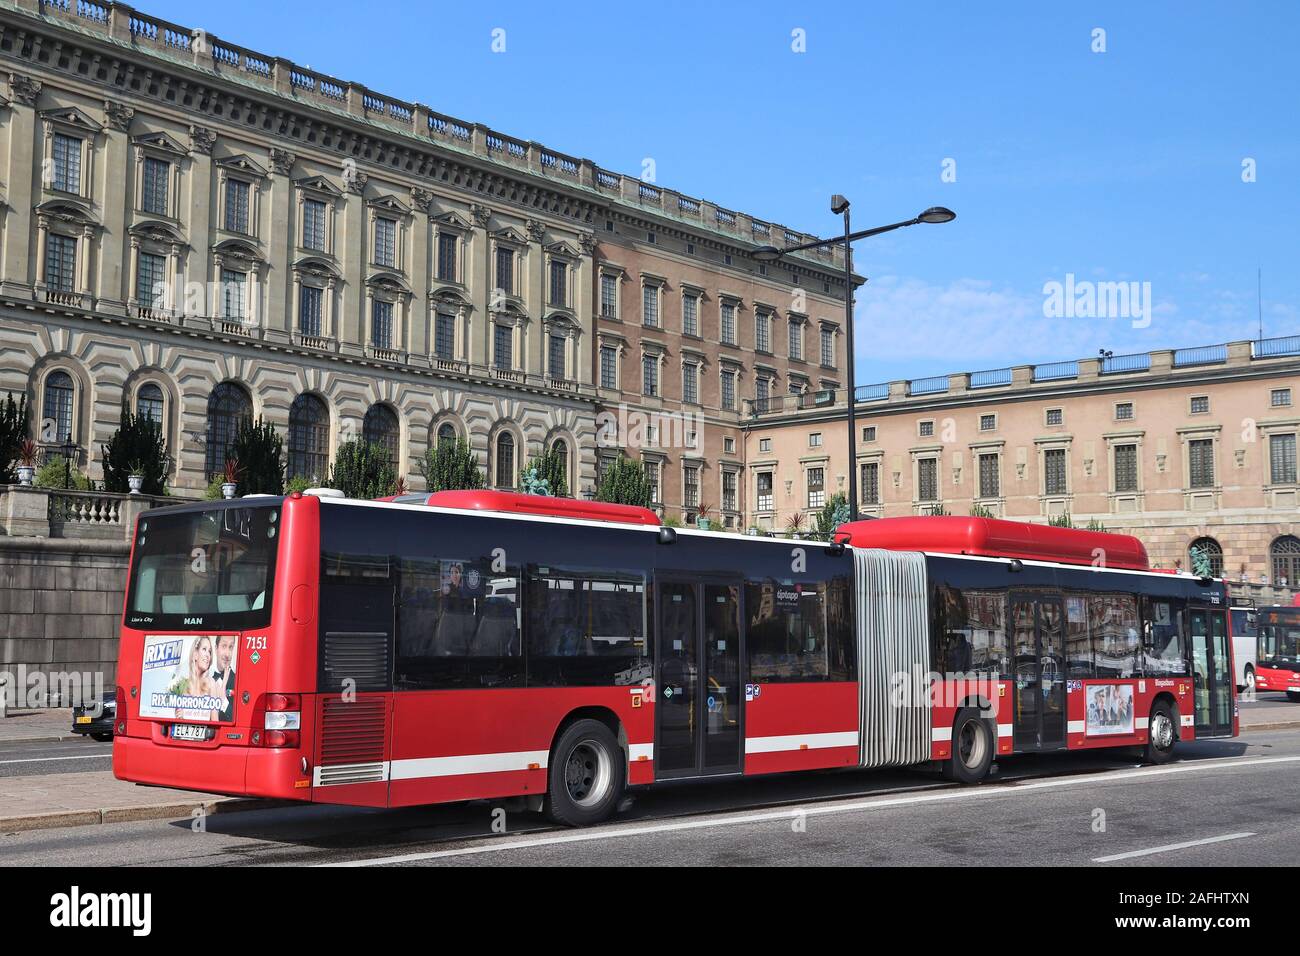 Stoccolma, Svezia - 24 agosto 2018: autobus di città di Stoccolma, Svezia. Gli autobus sono gestiti da SL, Storstockholms Lokaltrafik (maggiore locale di Stoccolma Foto Stock